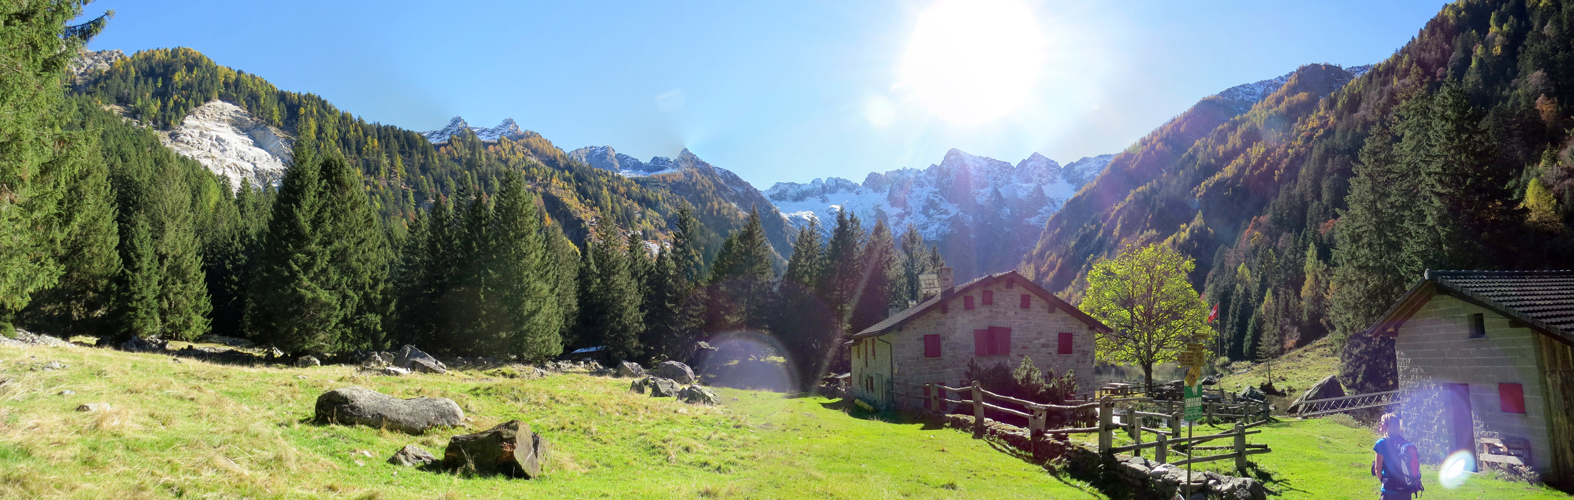 sehr schönes Breitbildfoto von der Alp del Lago